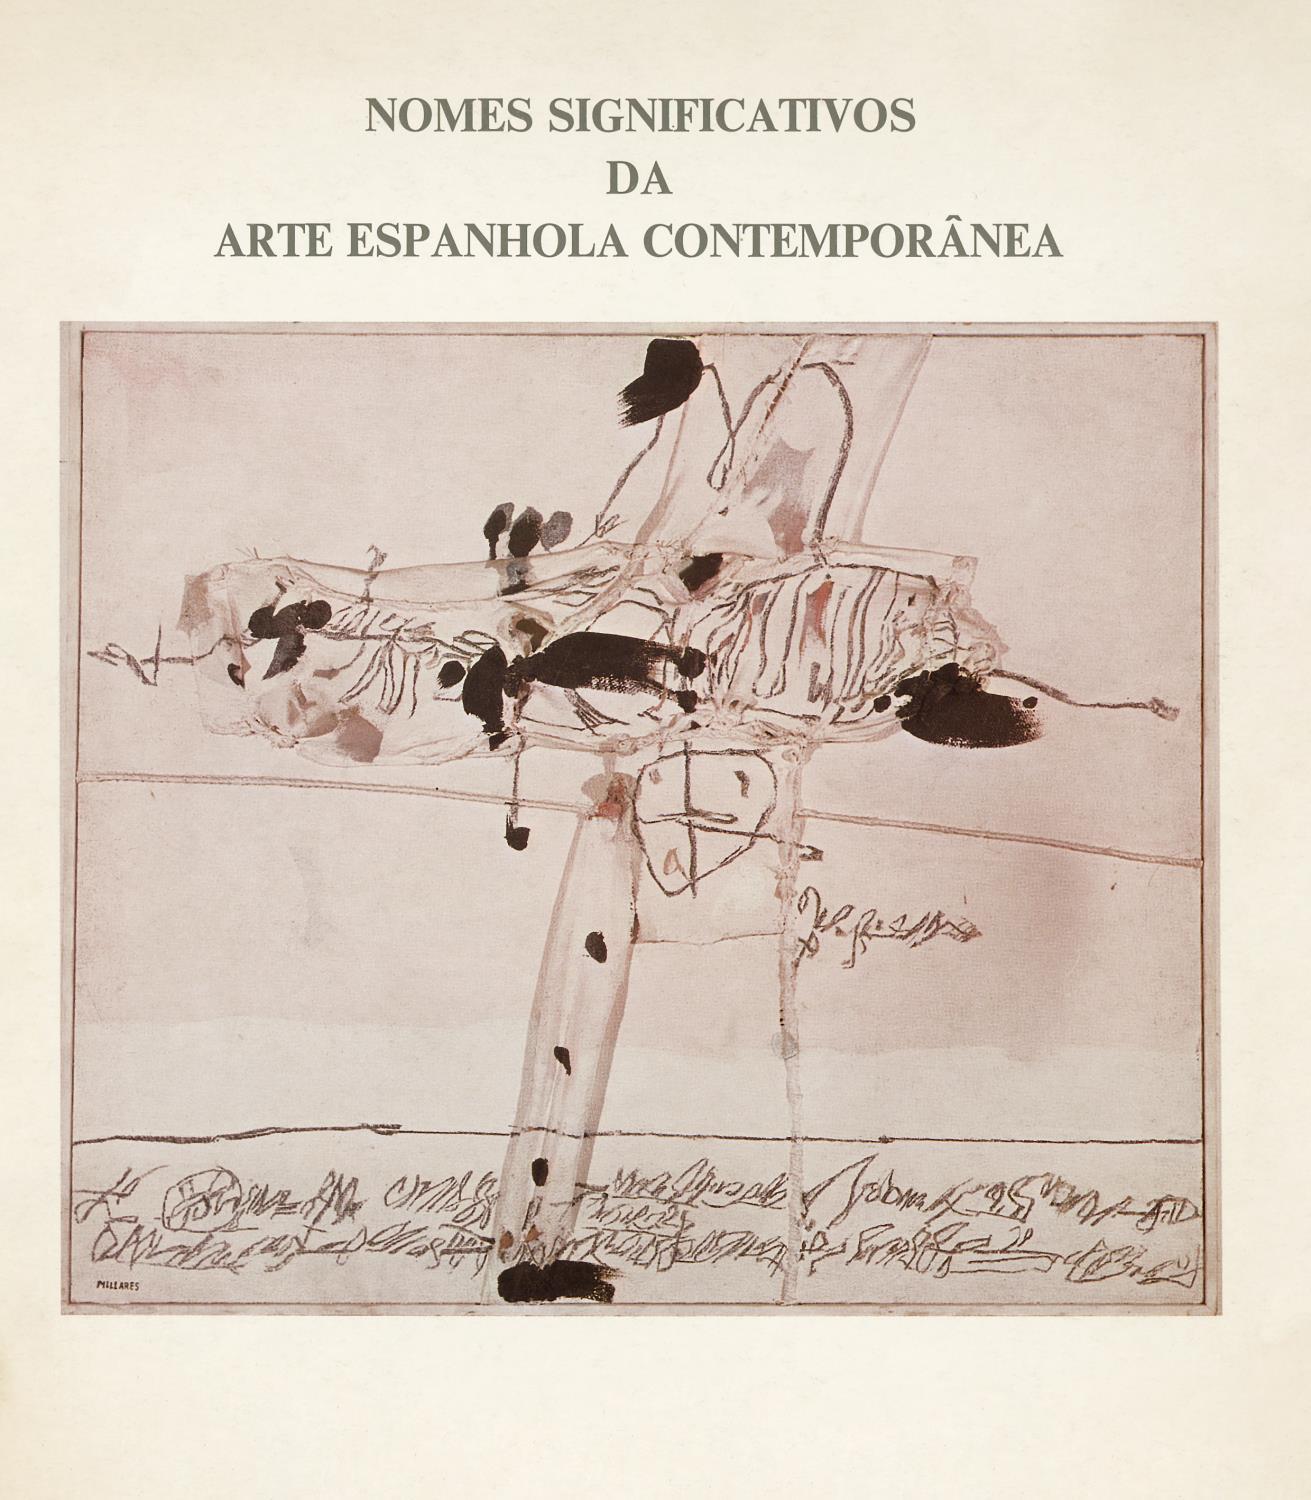 1981_Nomes_Significativos_da_Arte_Espanhola_Contemporanea_Catalogo_AHP1376